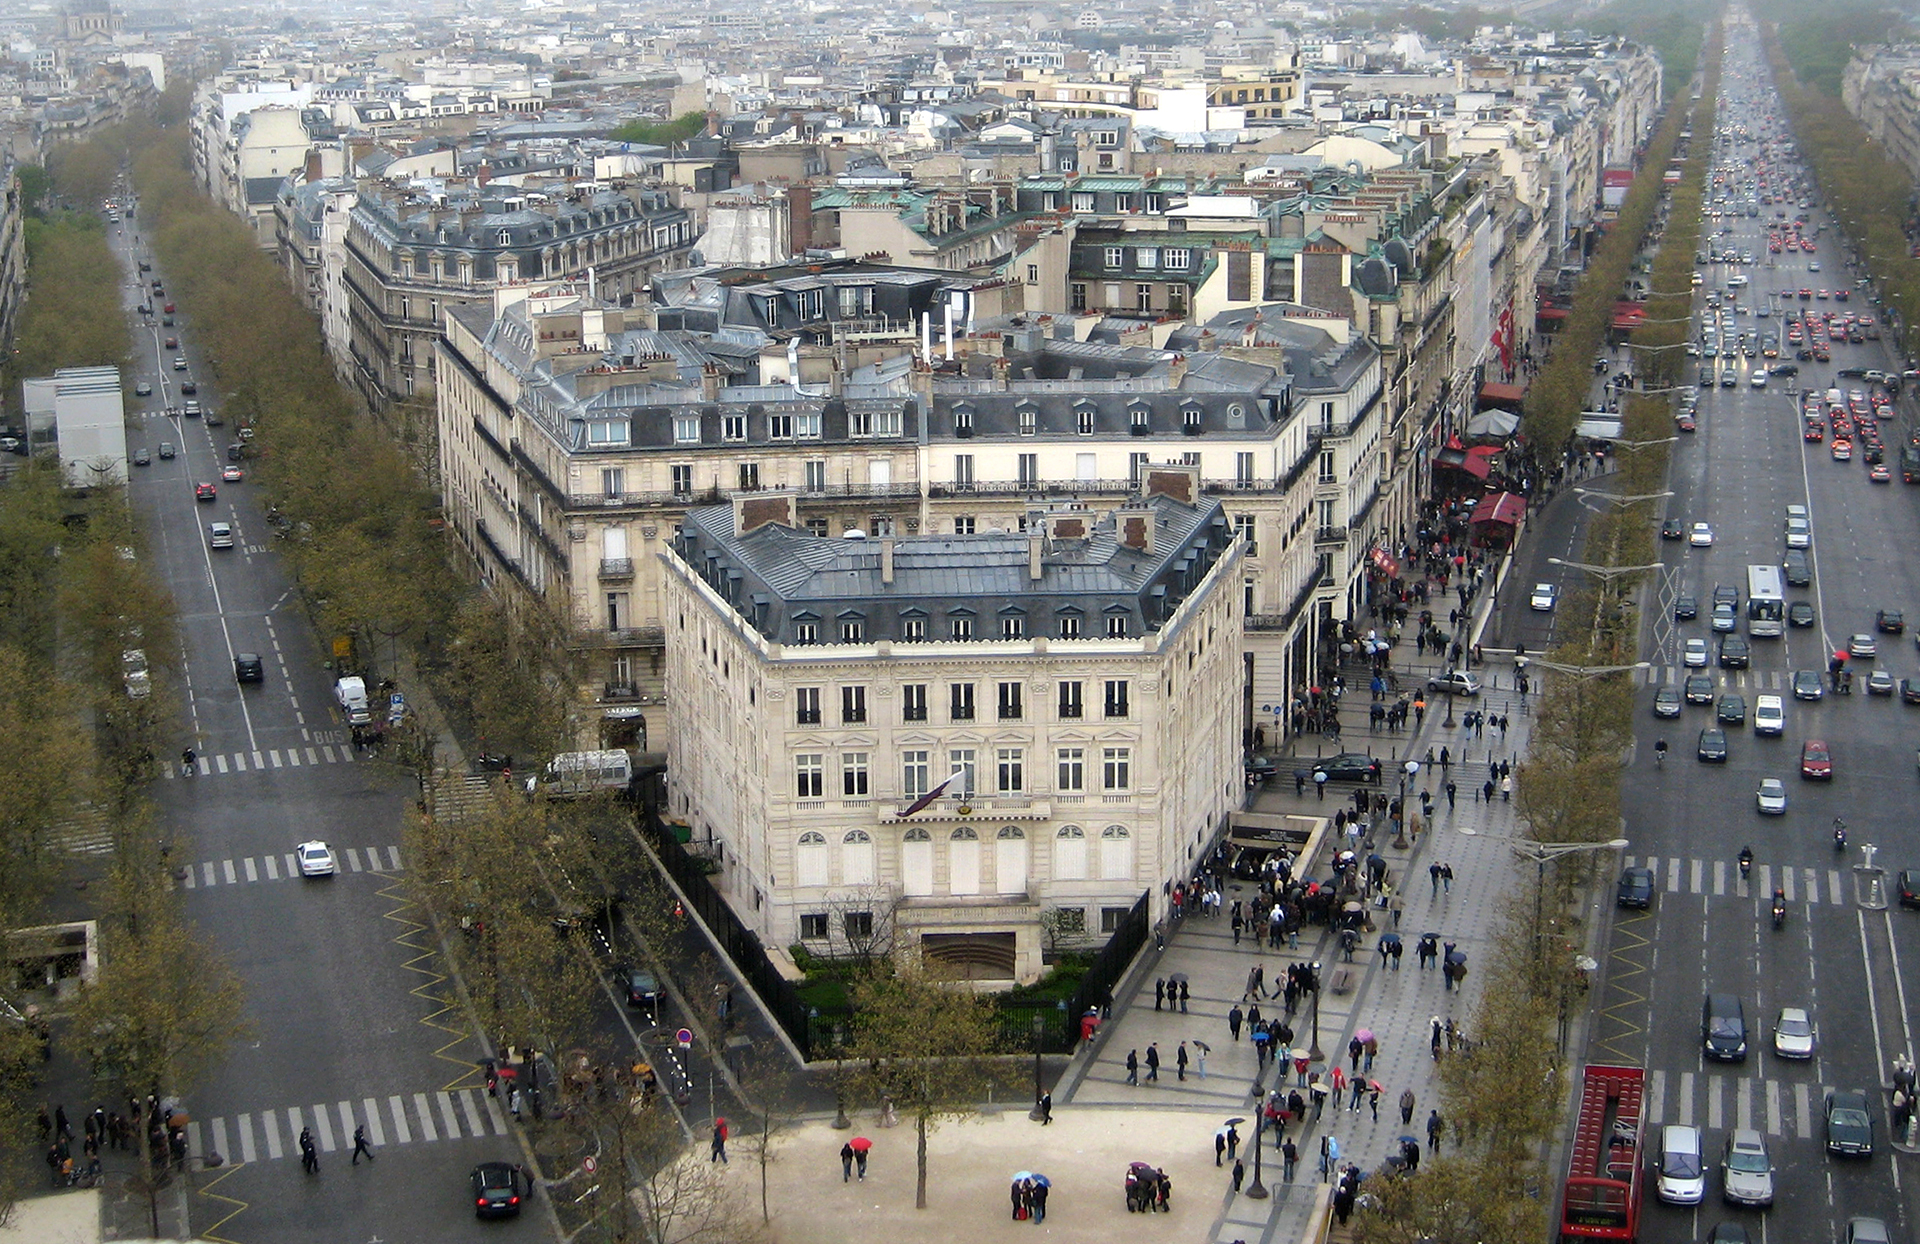 A Paris View